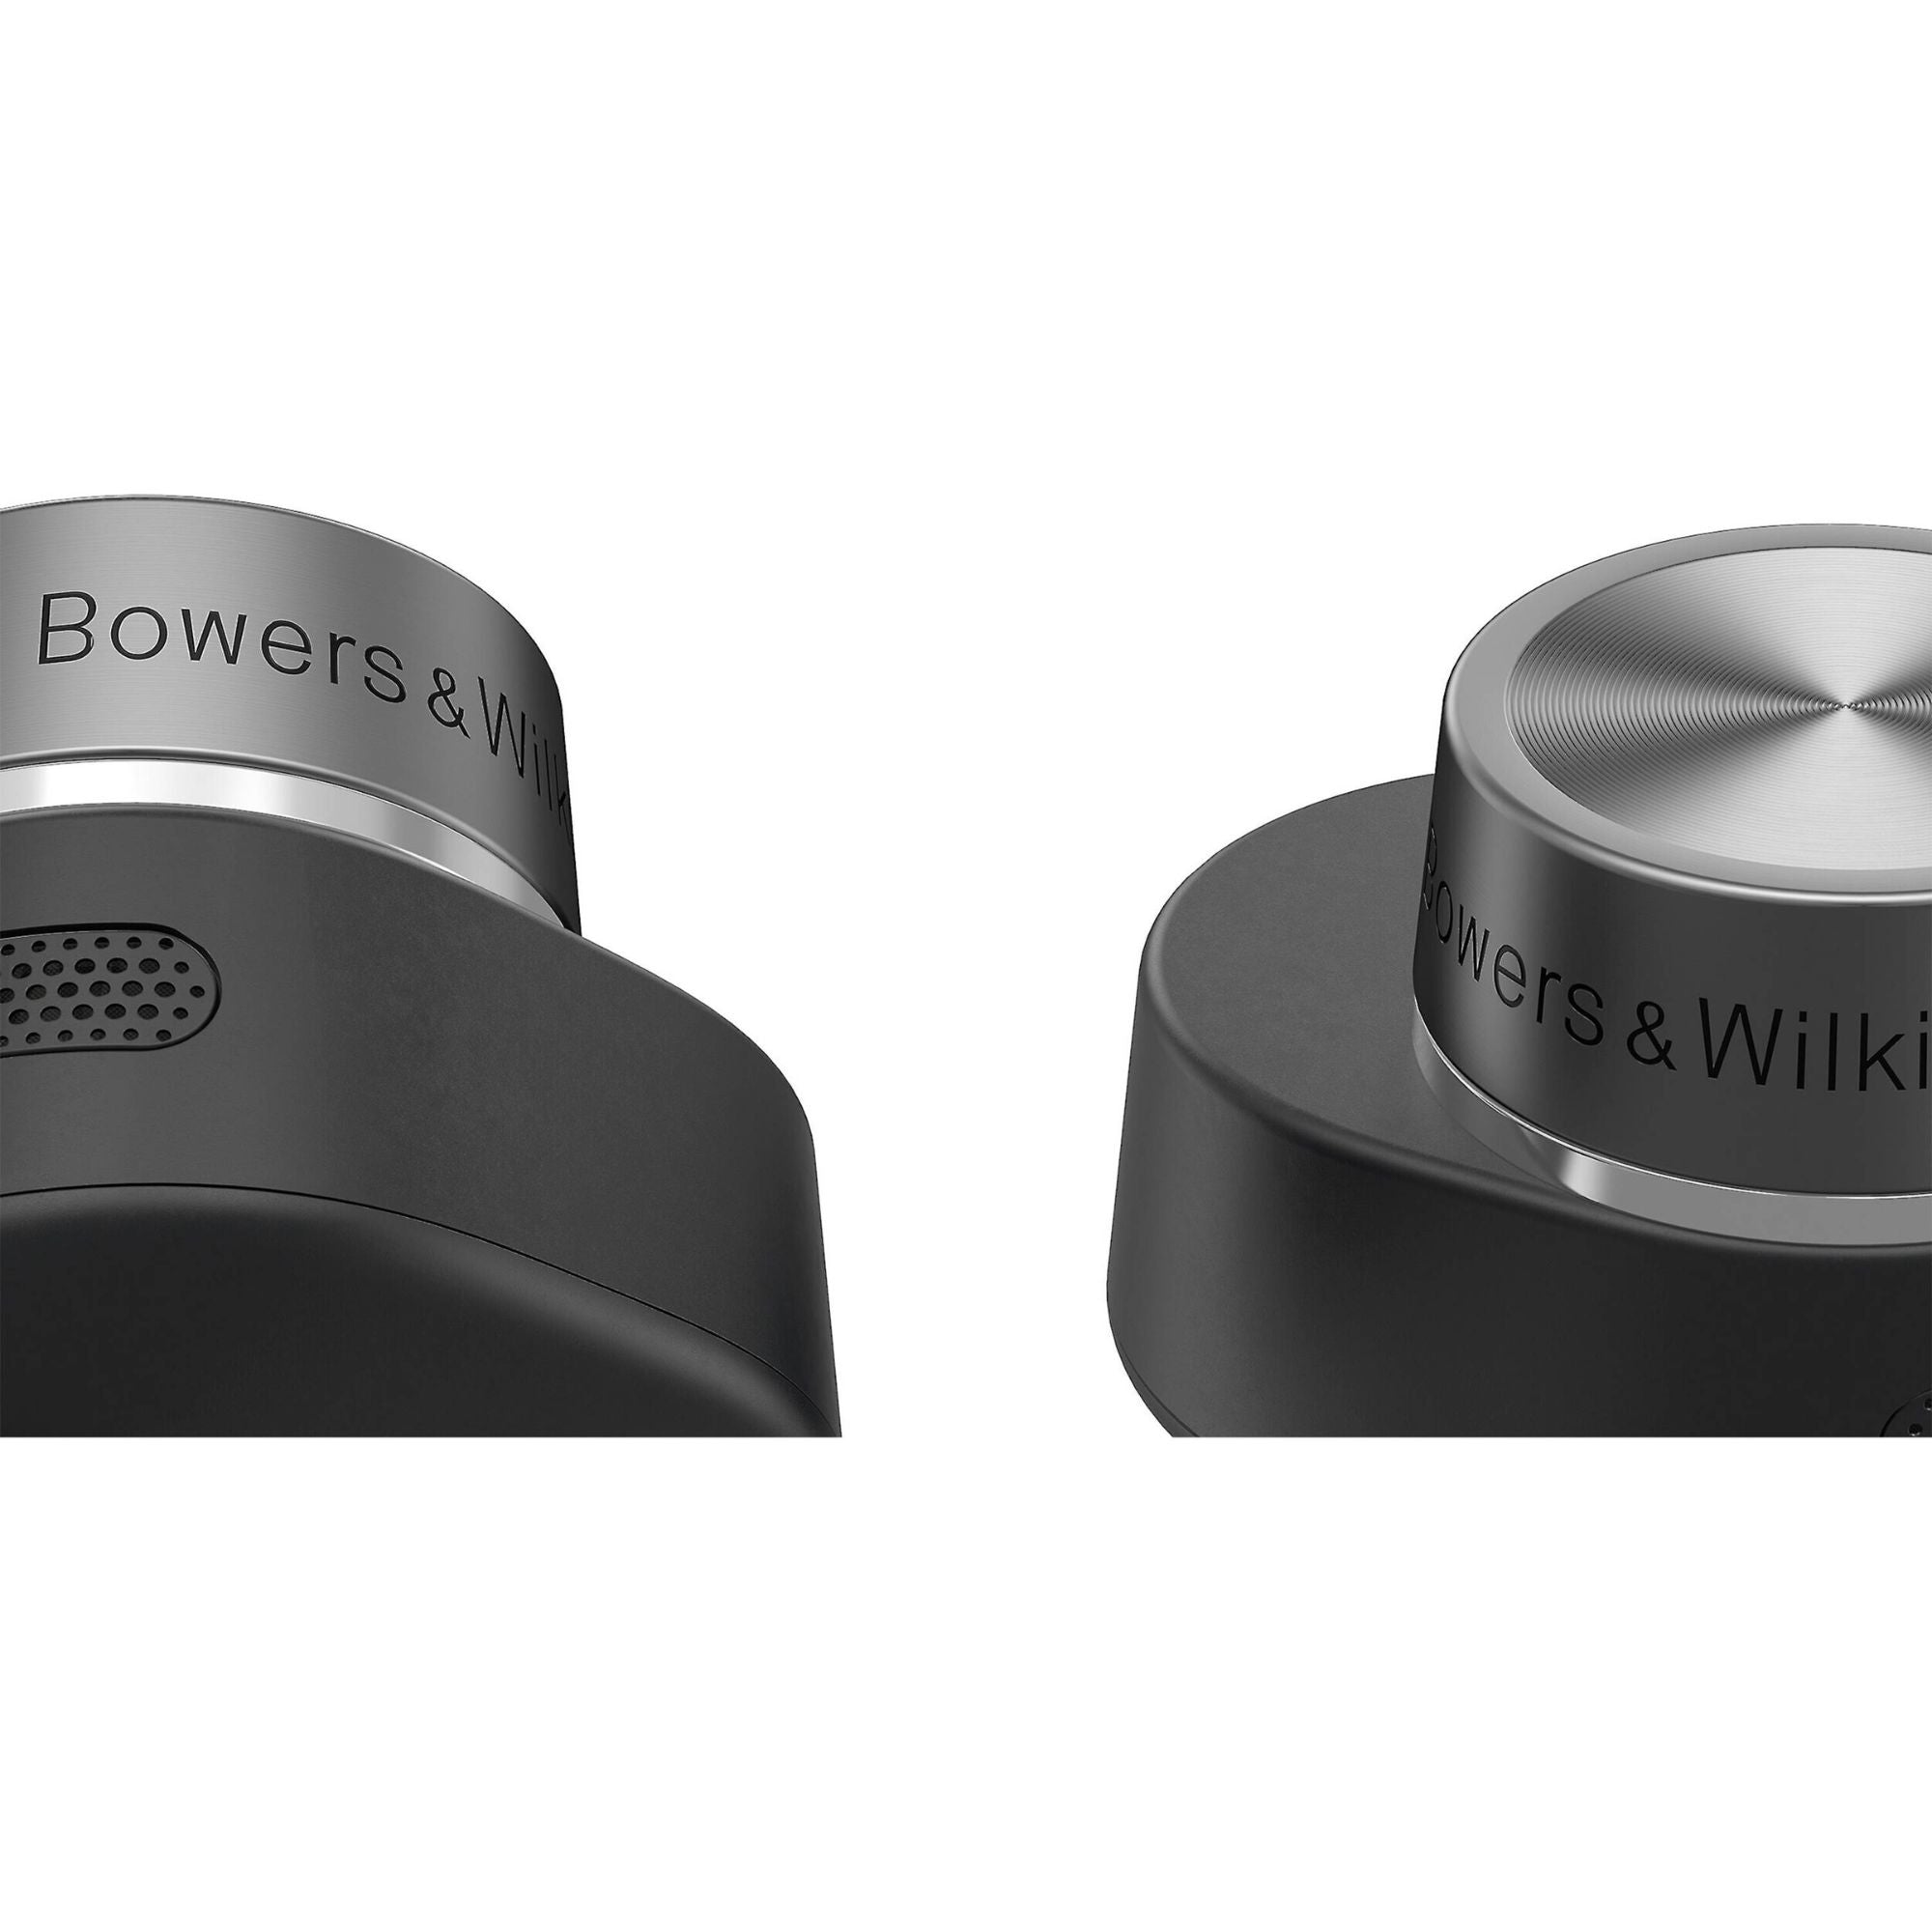 Bowers & Wilkins PI7 S2 - In-Ear True Wireless Earbuds, Bowers & Wilkins, Earbuds - AVStore.in